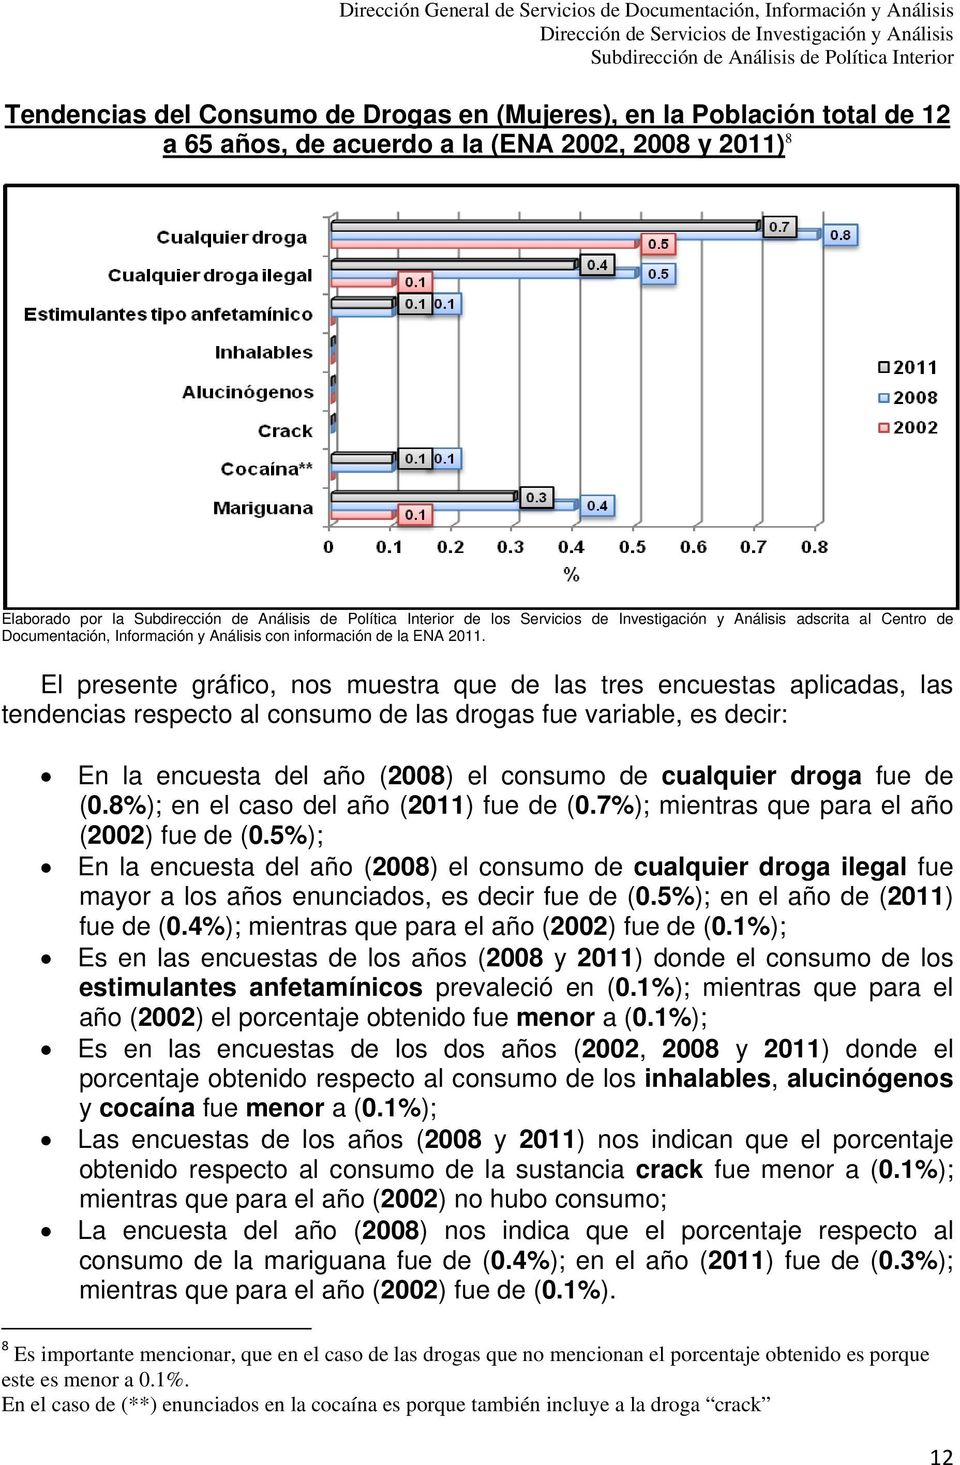 El presente gráfico, nos muestra que de las tres encuestas aplicadas, las tendencias respecto al consumo de las drogas fue variable, es decir: En la encuesta del año (2008) el consumo de cualquier